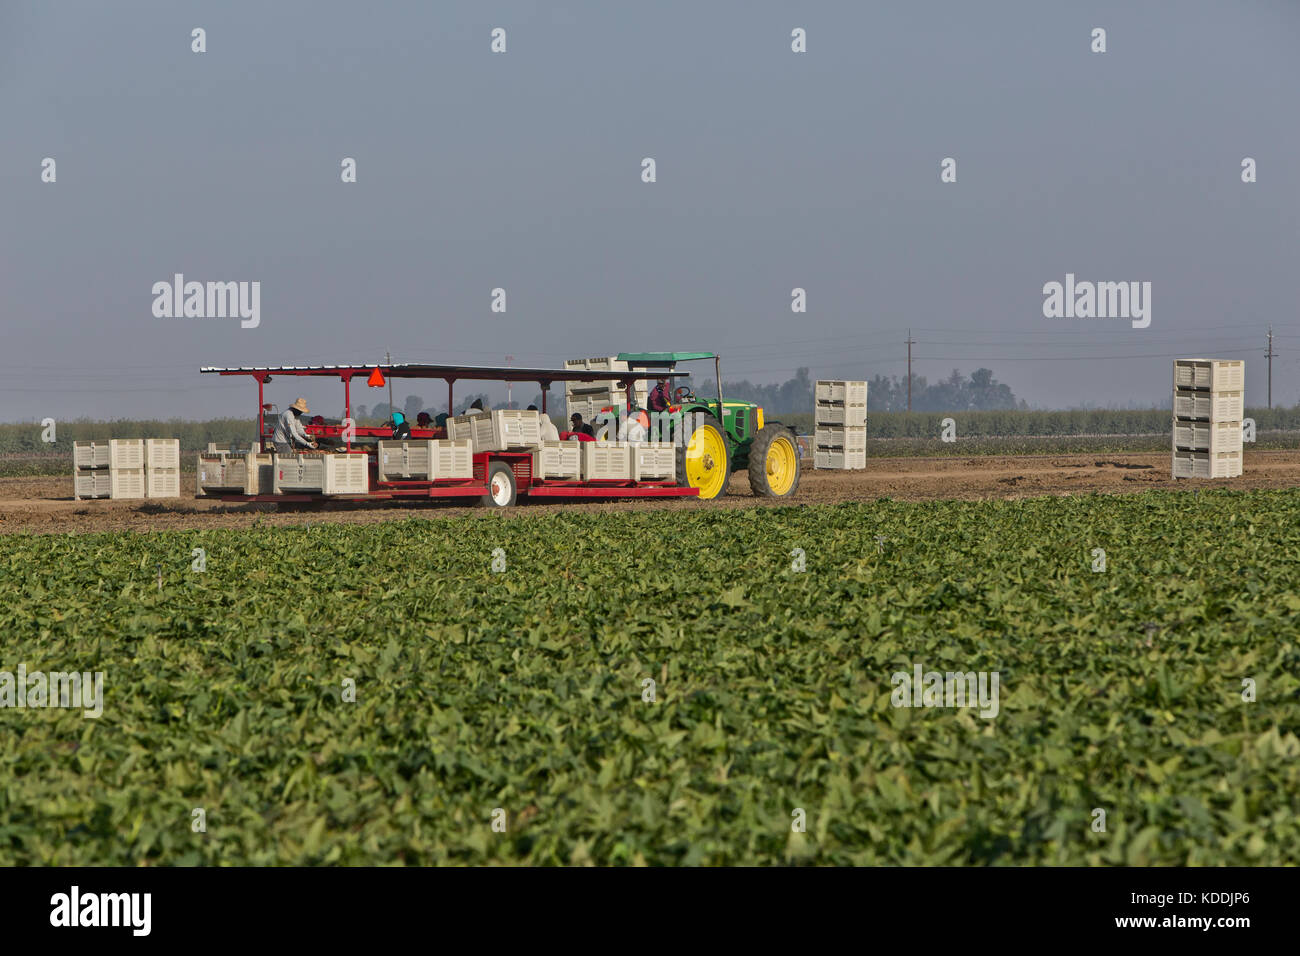 Cosechadora de elevación Kamote que transportaba a trabajadores 'cultivar' de 'La Batata Ipomoea batatas', filipina de hierbas medicinales, la planta de tractores John Deere. Foto de stock